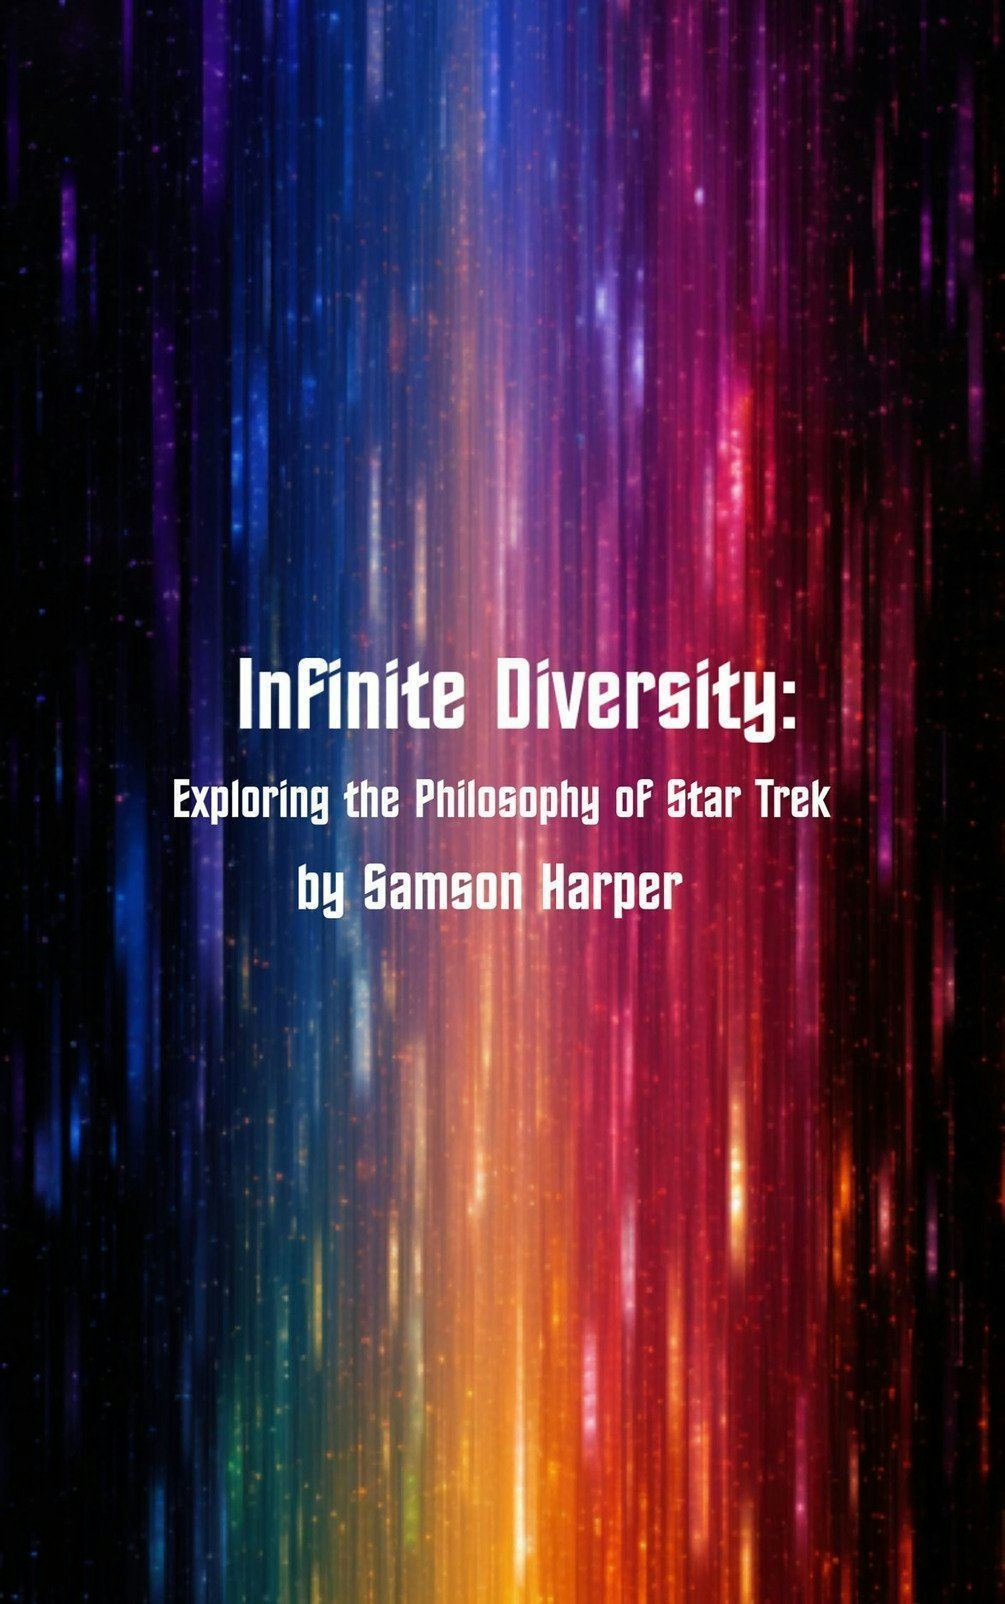 Infinite Diversity: Exploring Star Trek's Philosophy by Samson Harper